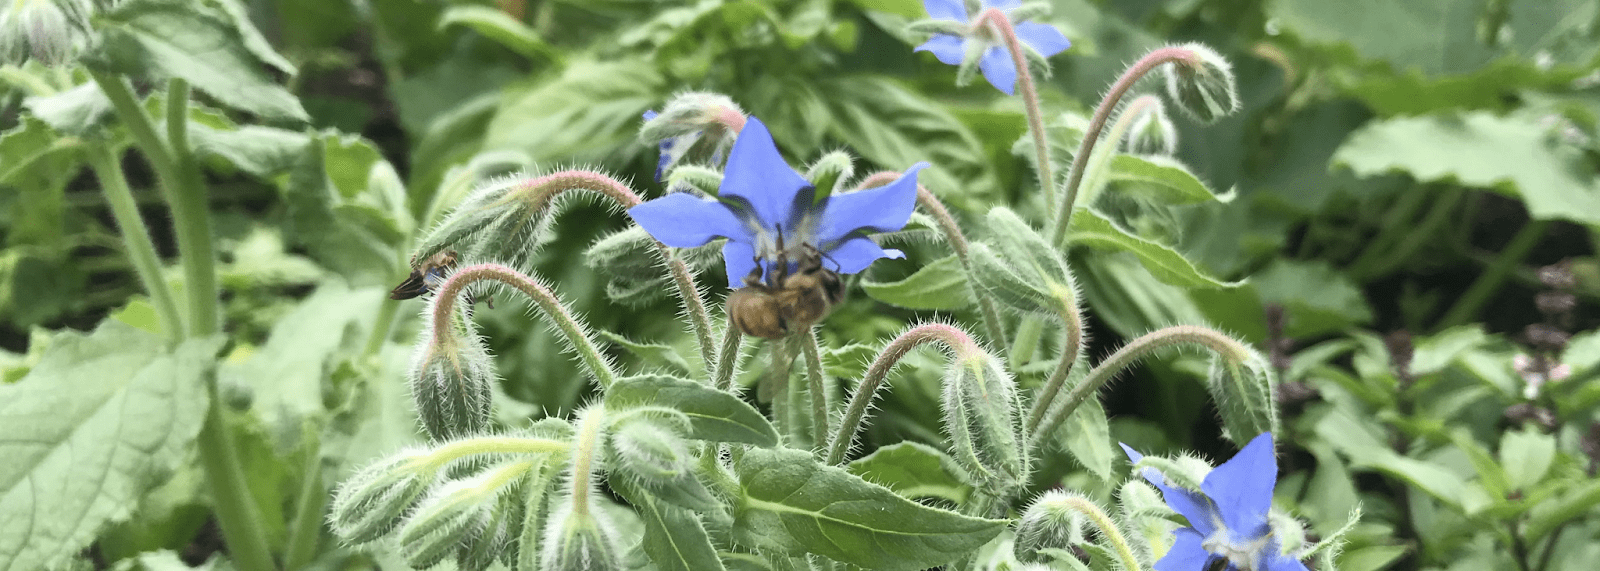 Bir bal arısı tarafından ziyaret edilen, yapraklar ve saplarla çevrili menekşeli çiçeğin başlık genişliğindeki resmi.